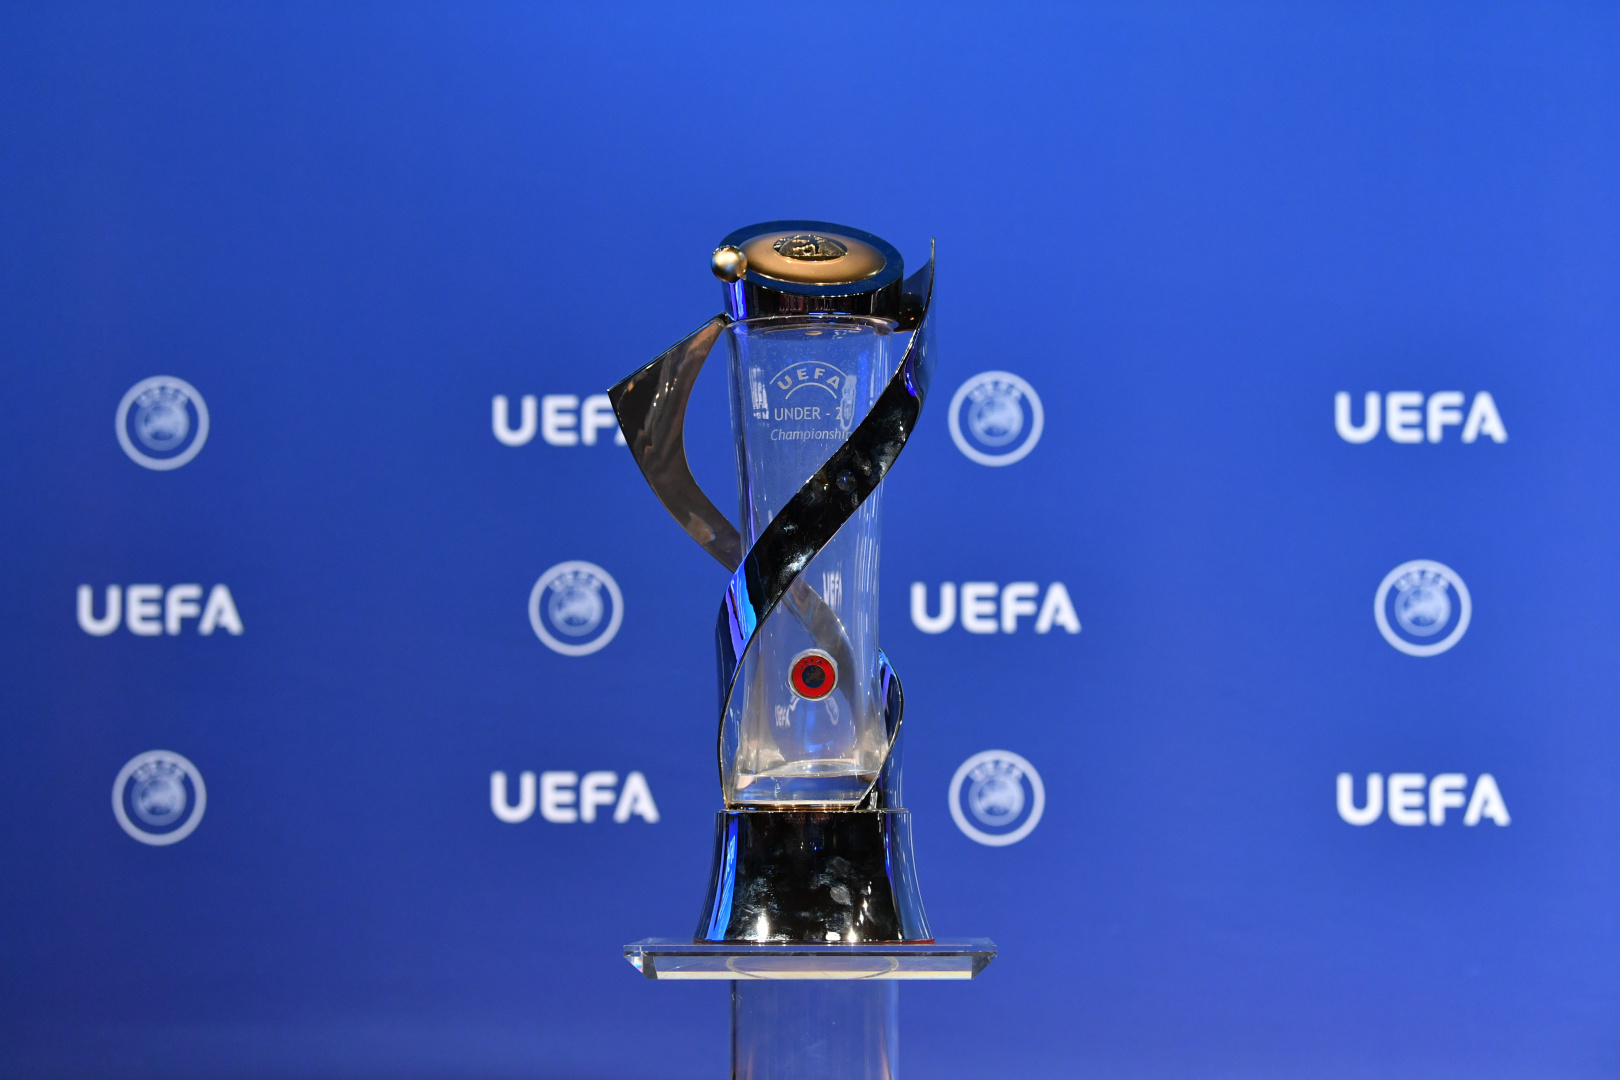 Uefa euro 2021